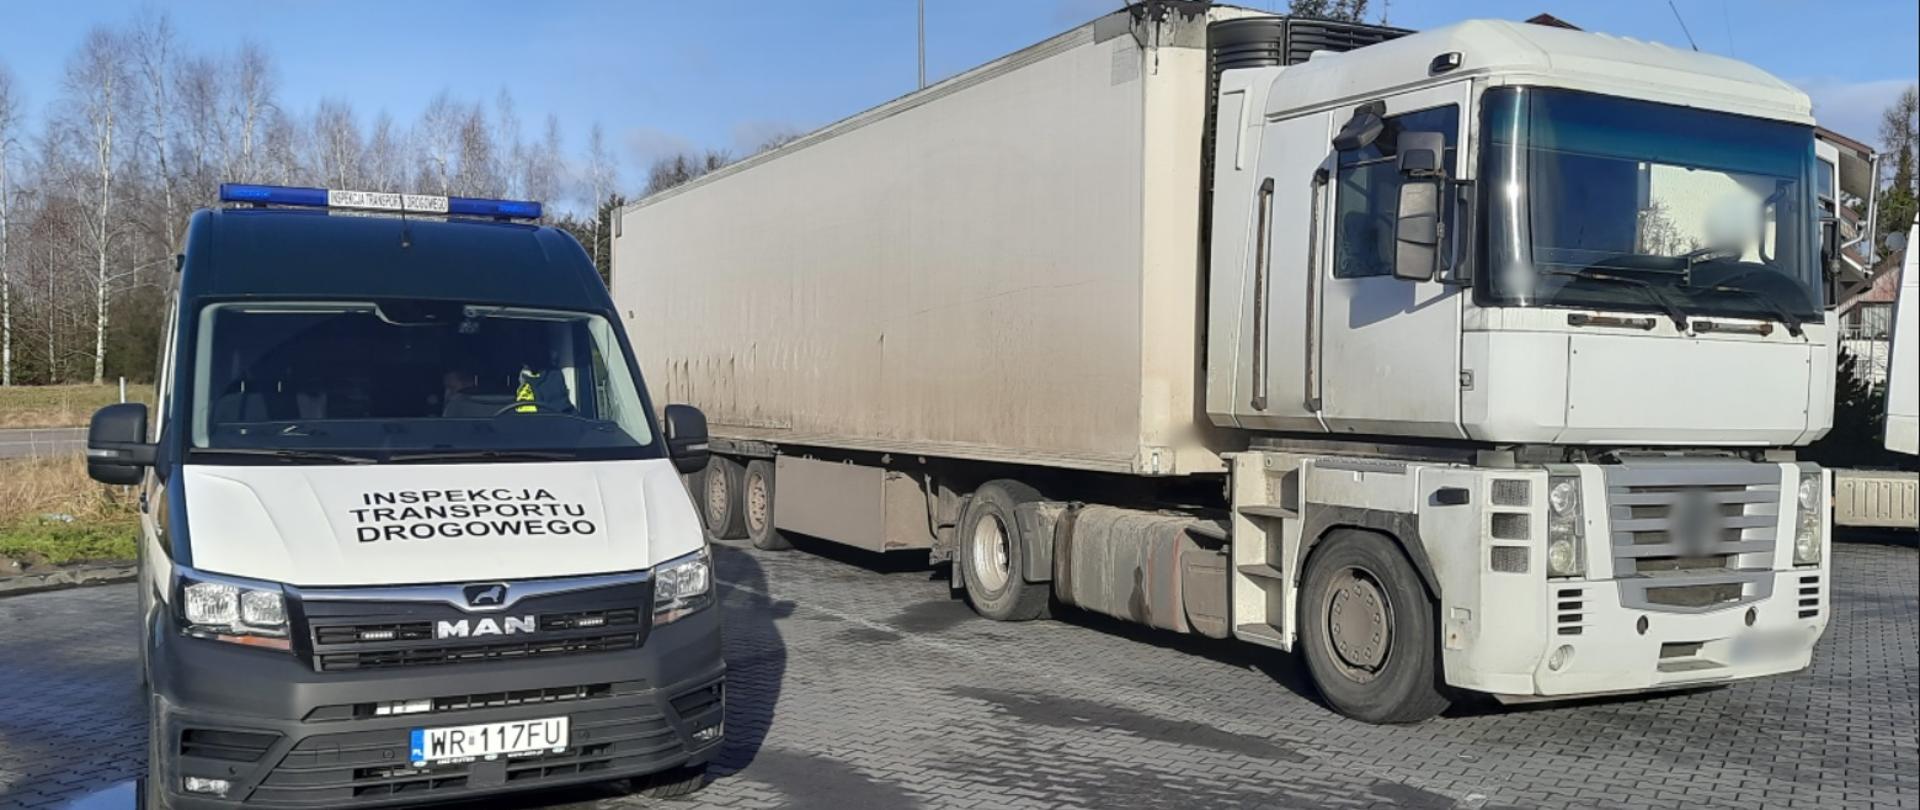 Miejsce zatrzymania do kontroli niesprawnej technicznie ciężarówki przez patrol mazowieckiej Inspekcji Transportu Drogowego.